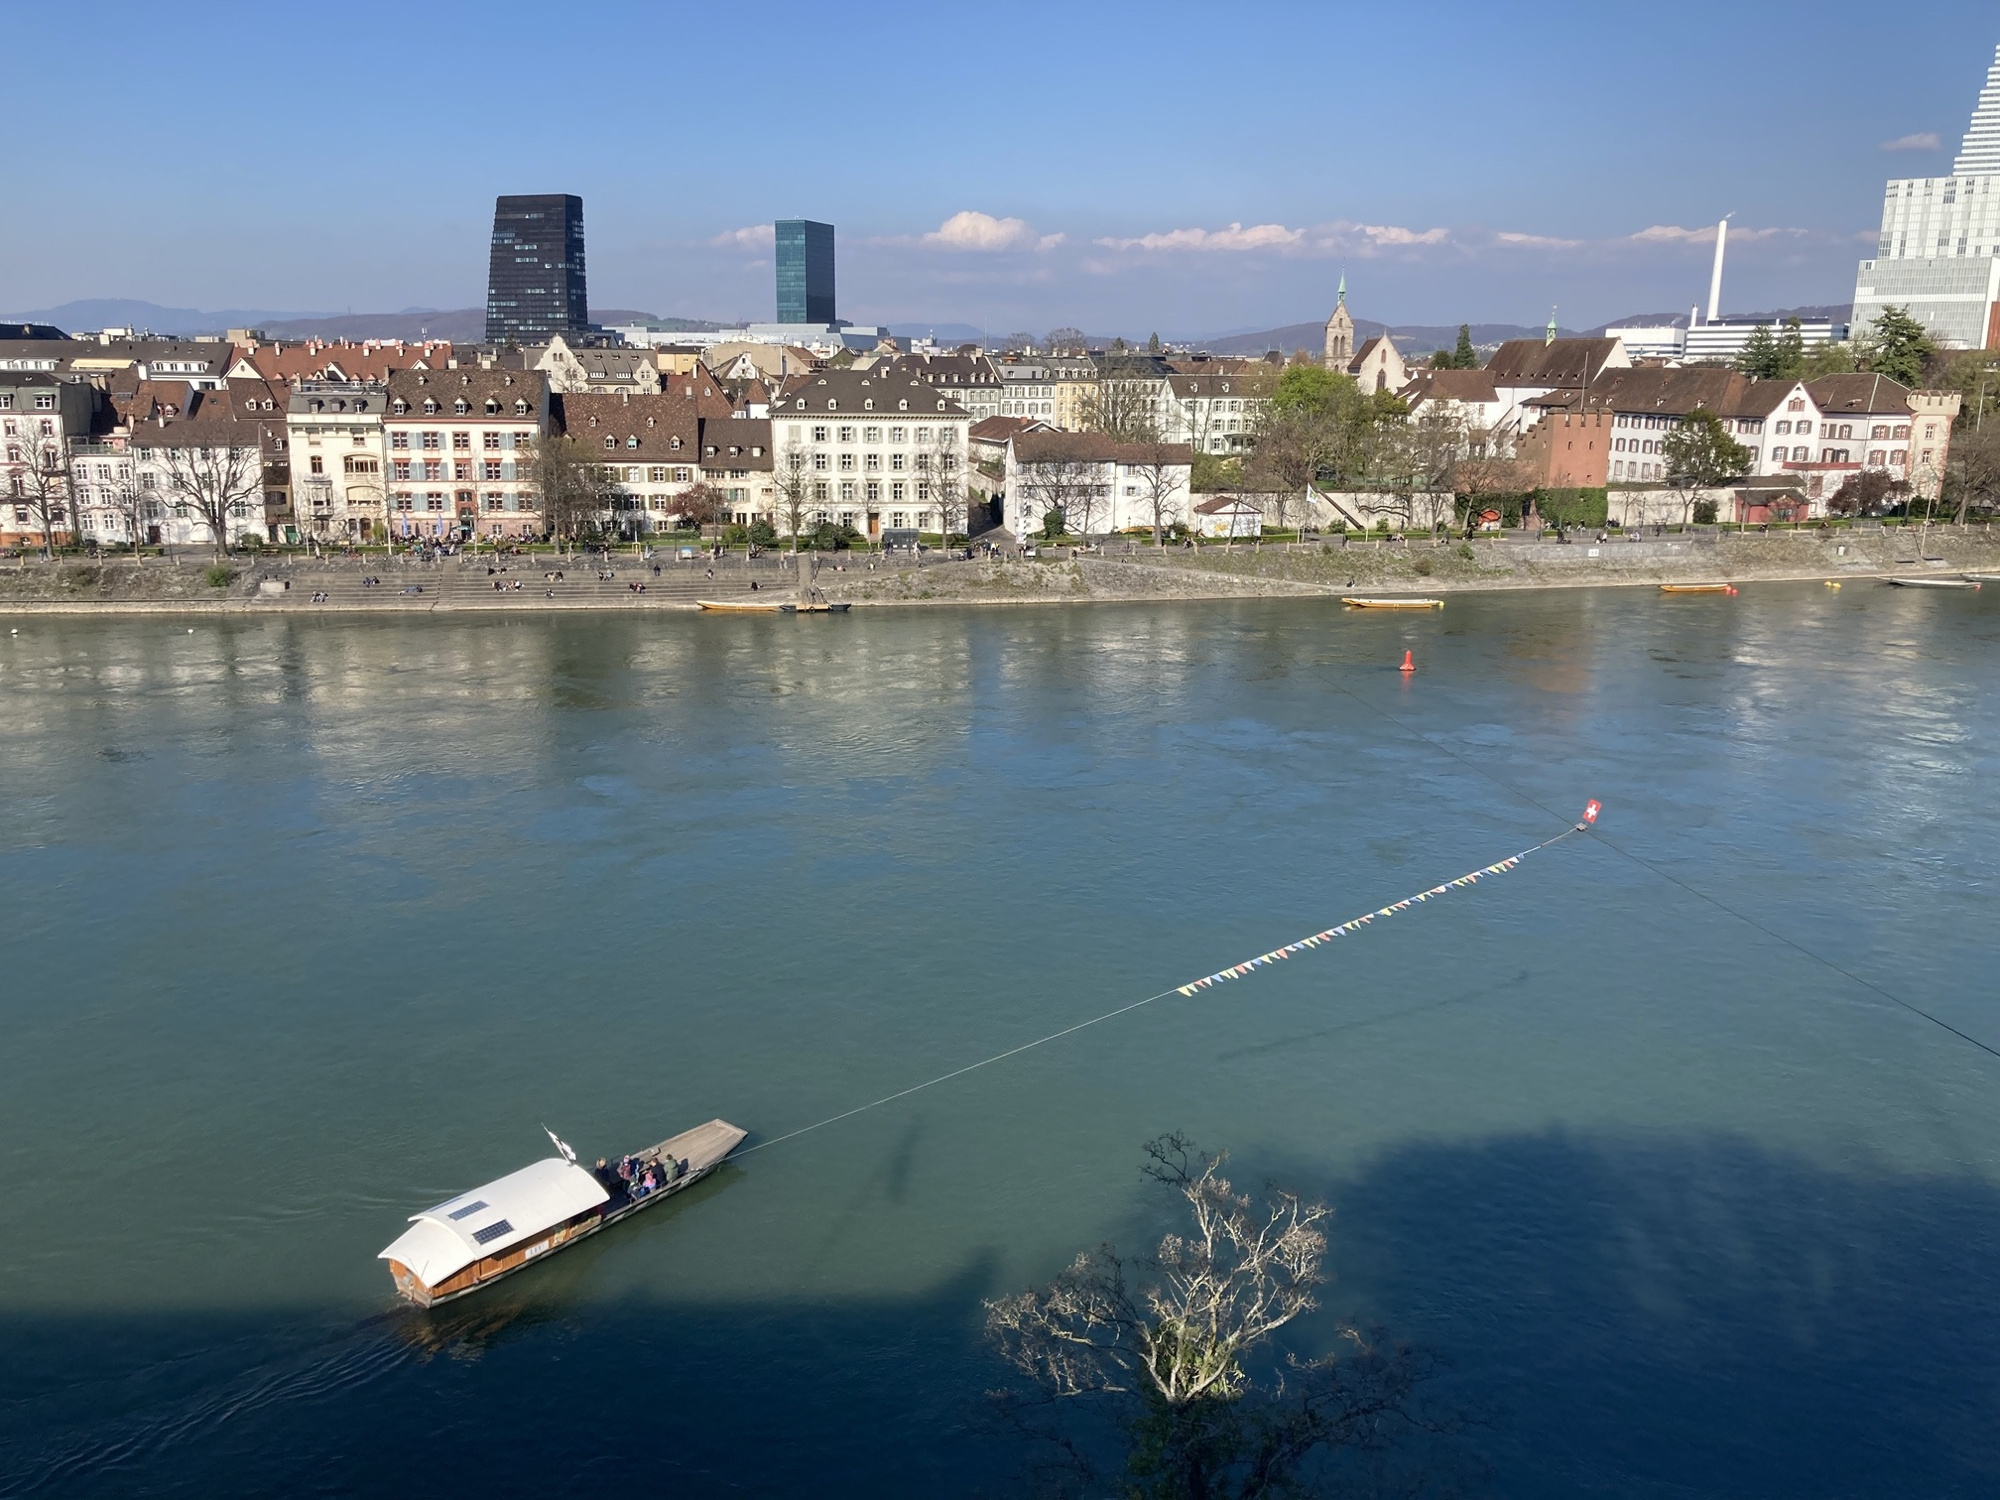 Fähre, die an einem Seil über den Rhein gezogen wird, im Hintergrund der Stadtteil Leu mit Uferpromenade, alten Häusern und zwei vereinzelten Wolkenkratzern